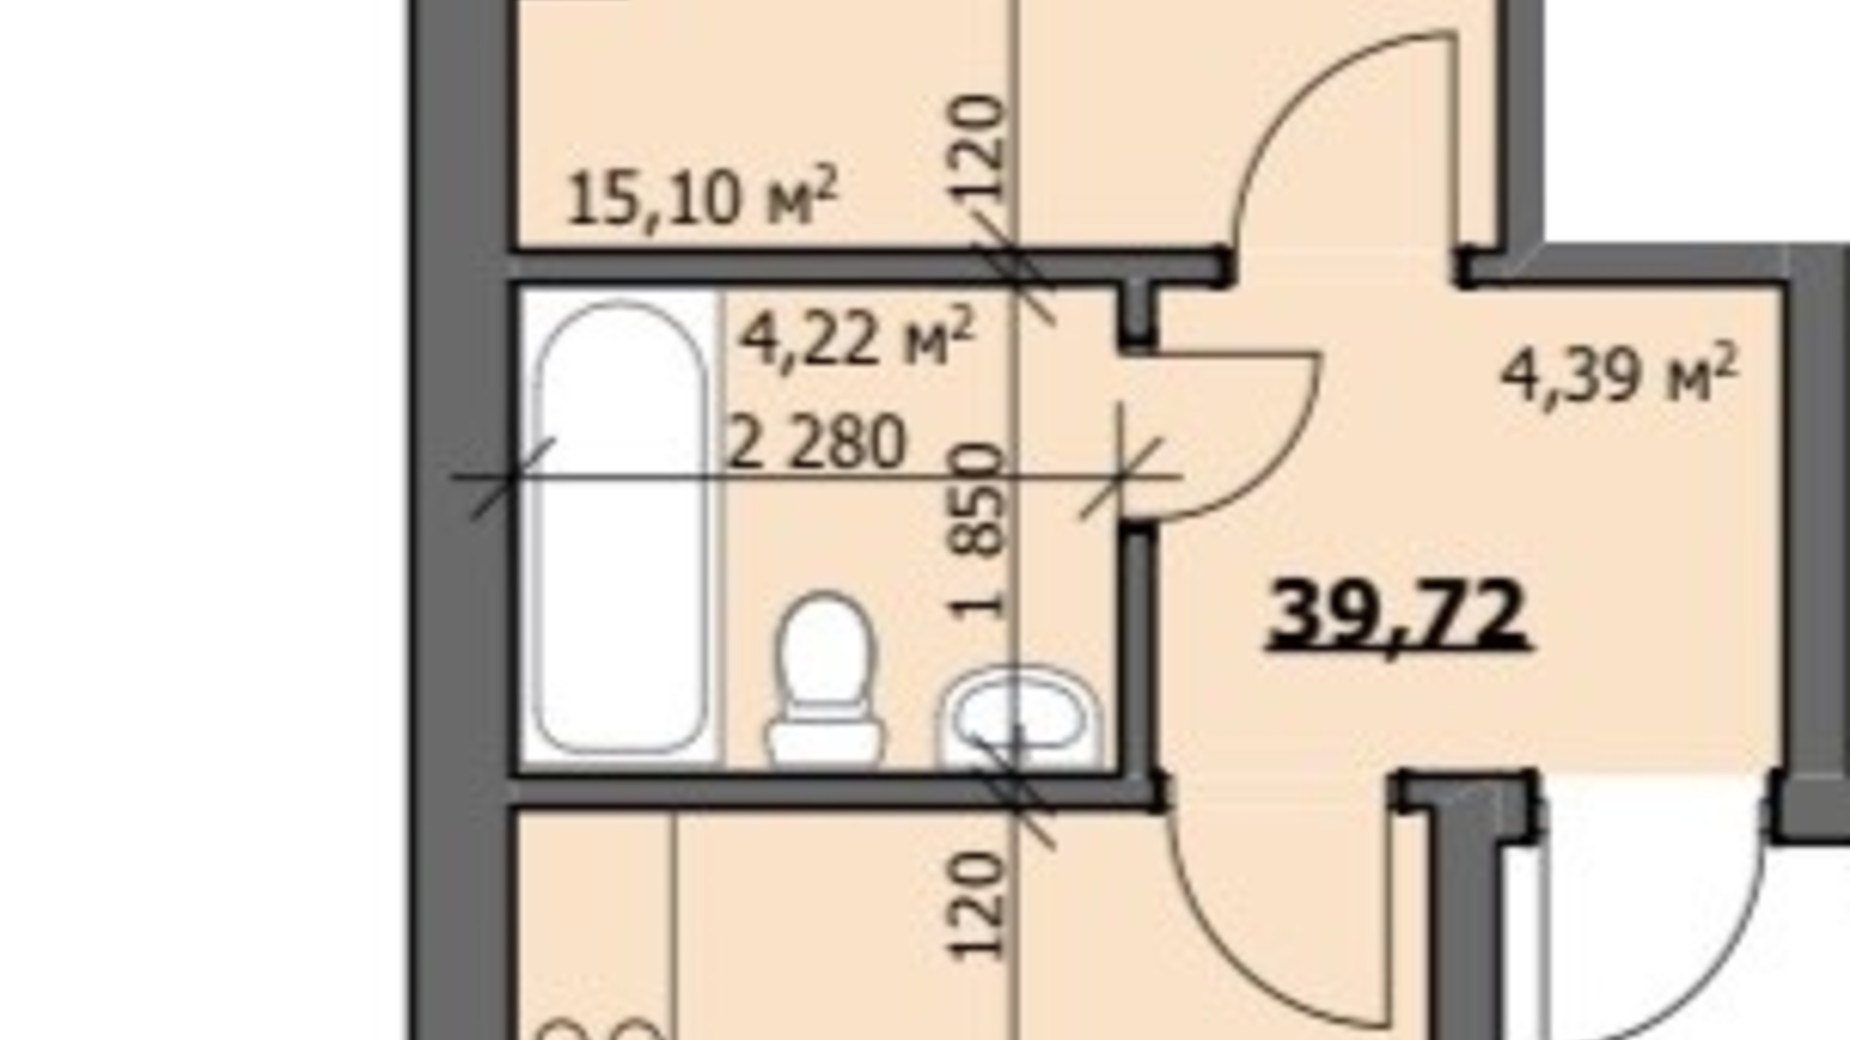 Планировка 1-комнатной квартиры в ЖК ул. Наливайко 40 м², фото 686456